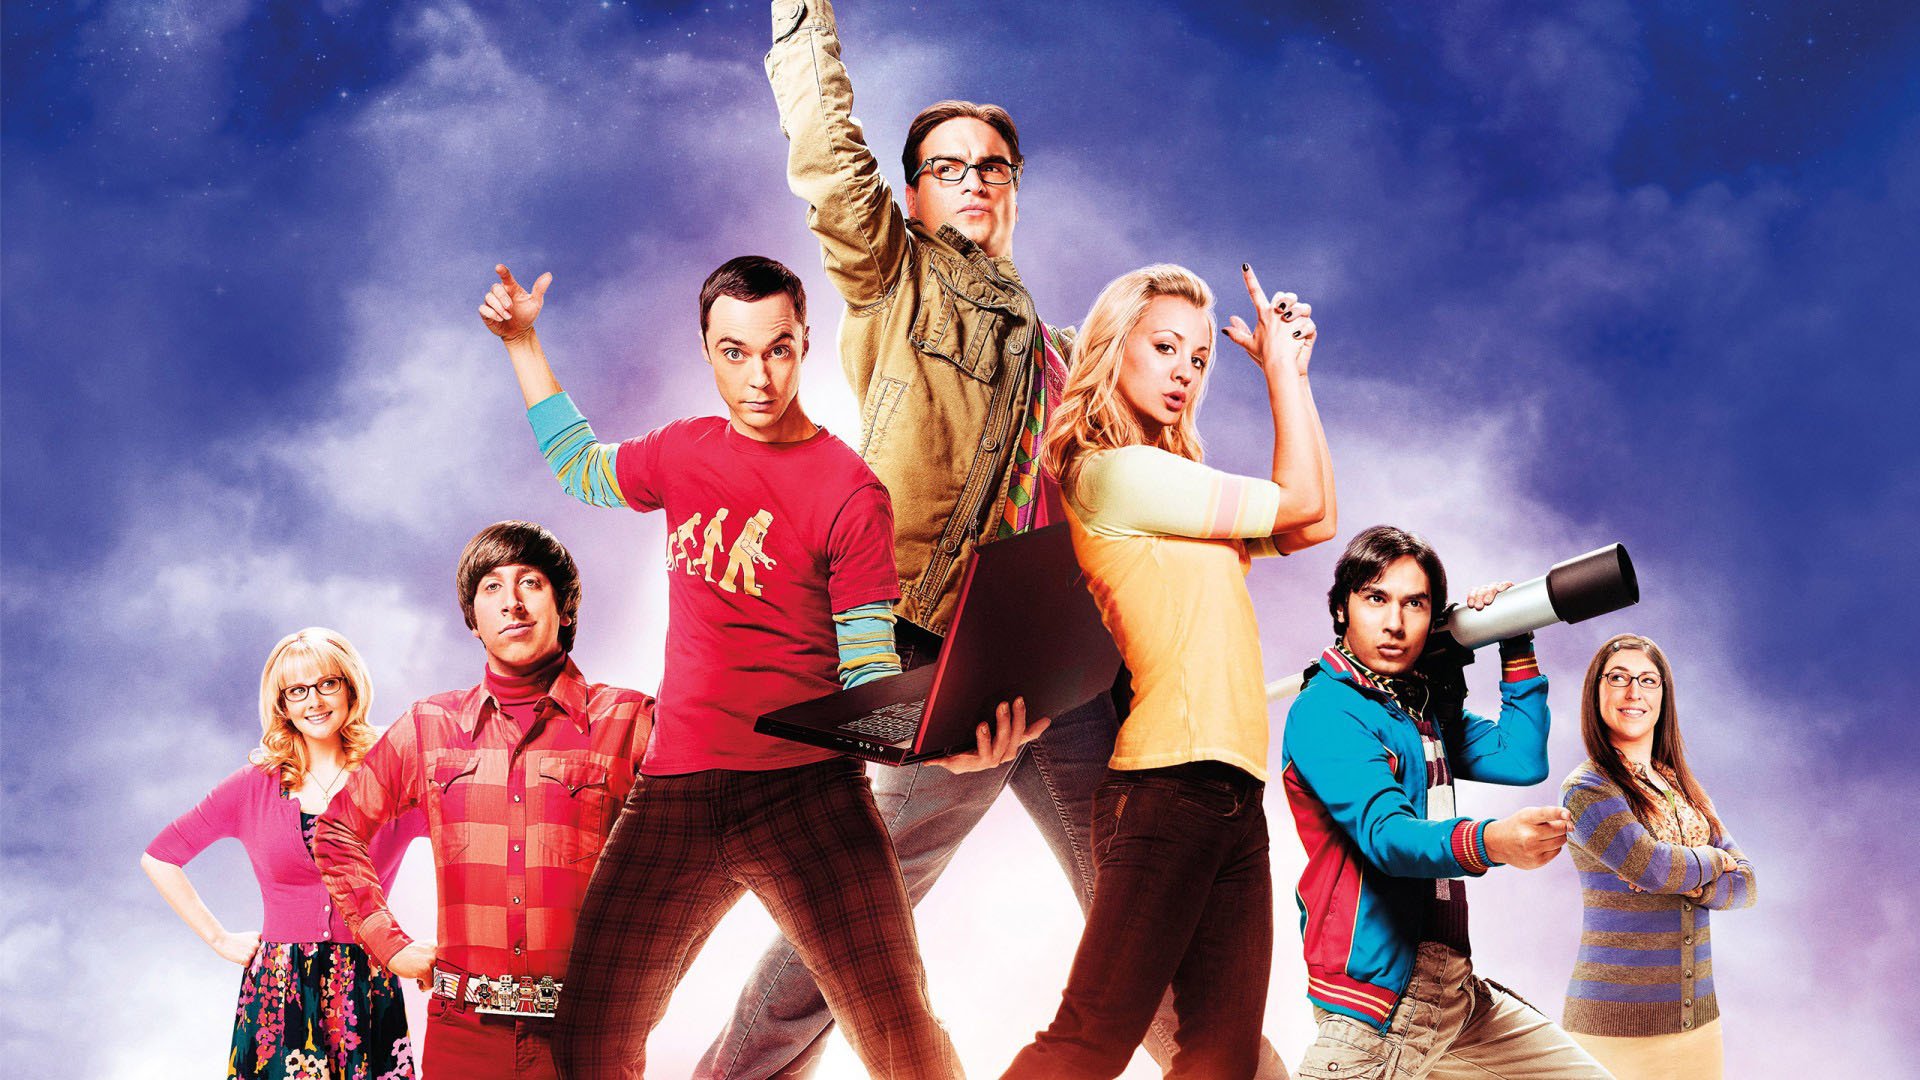 დიდი აფეთქების თეორია სეზონი 5 / The Big Bang Theory Season 5 ქართულად